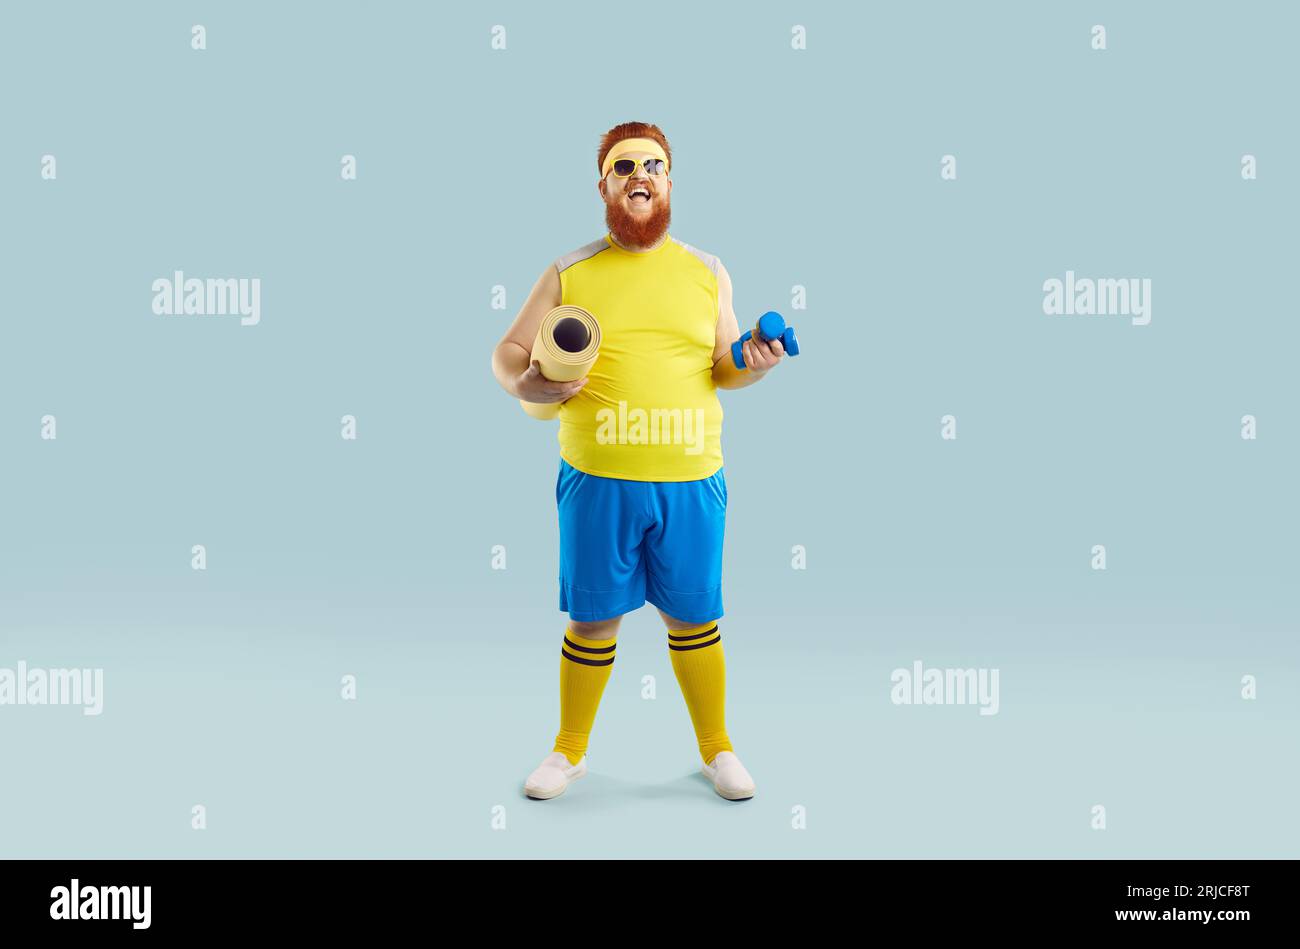 Foto studio di dimensioni normali di un ragazzo grasso divertente con tuta da fitness gialla e blu. Foto Stock